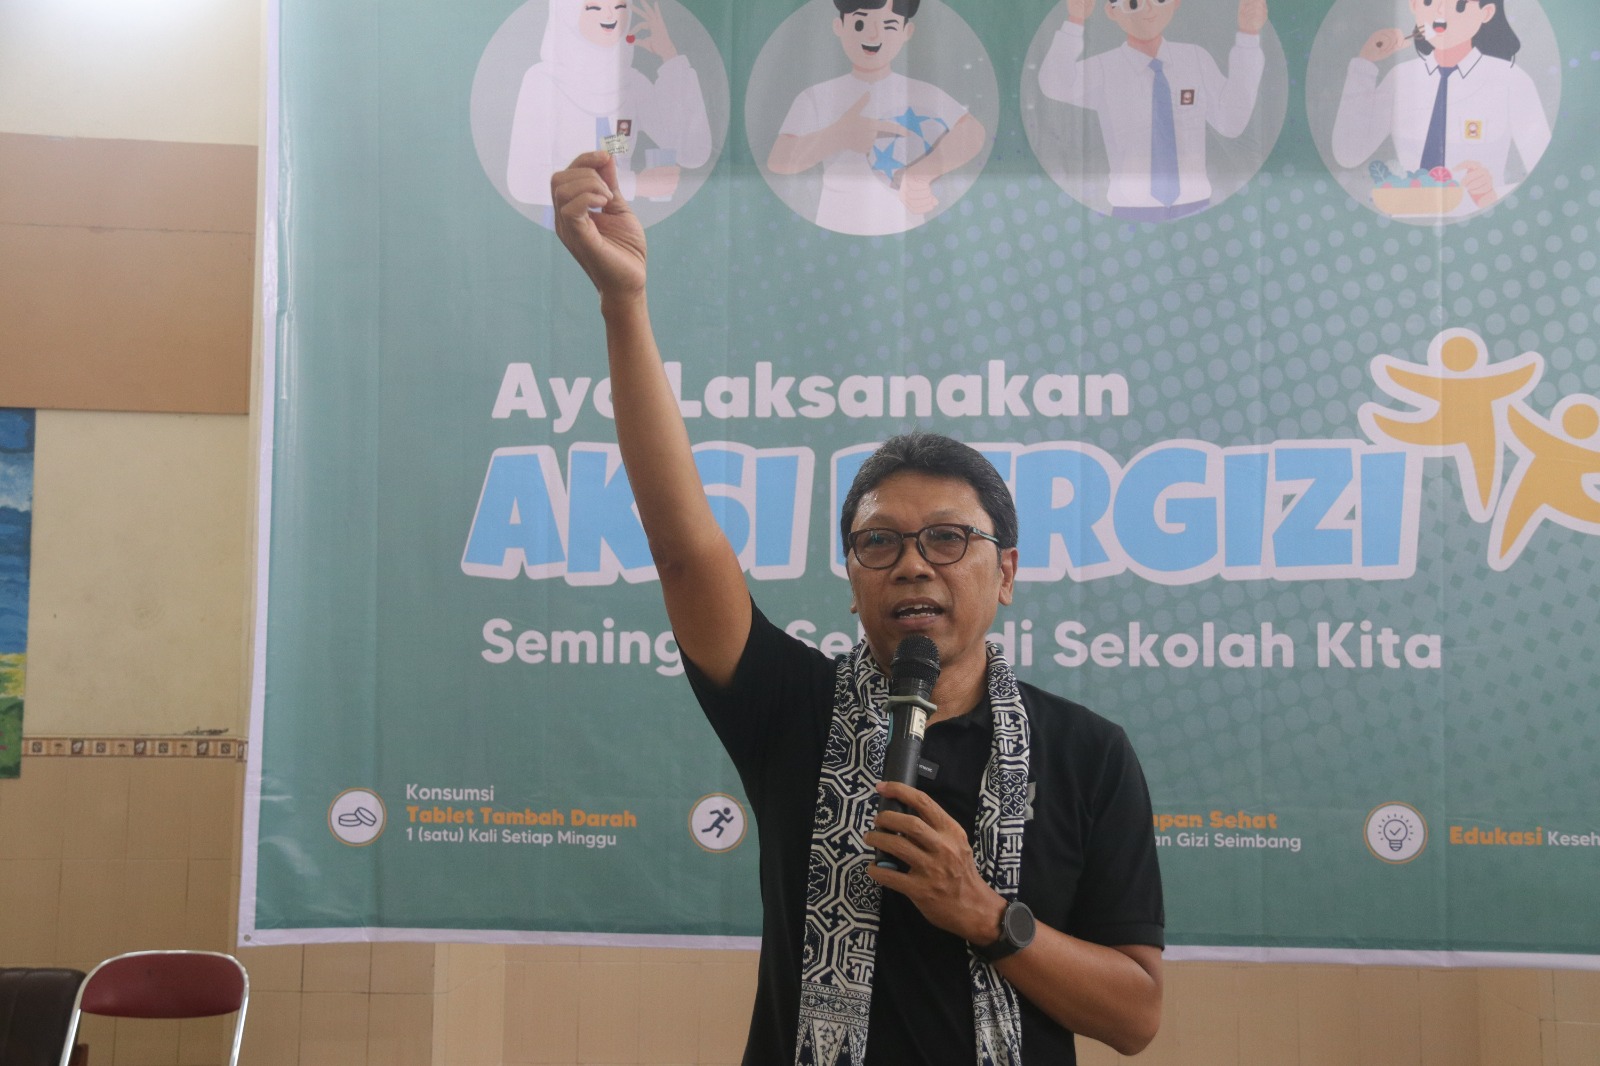 Sekolah di Kota Yogyakarta Serentak Aksi Bergizi Cegah Stunting